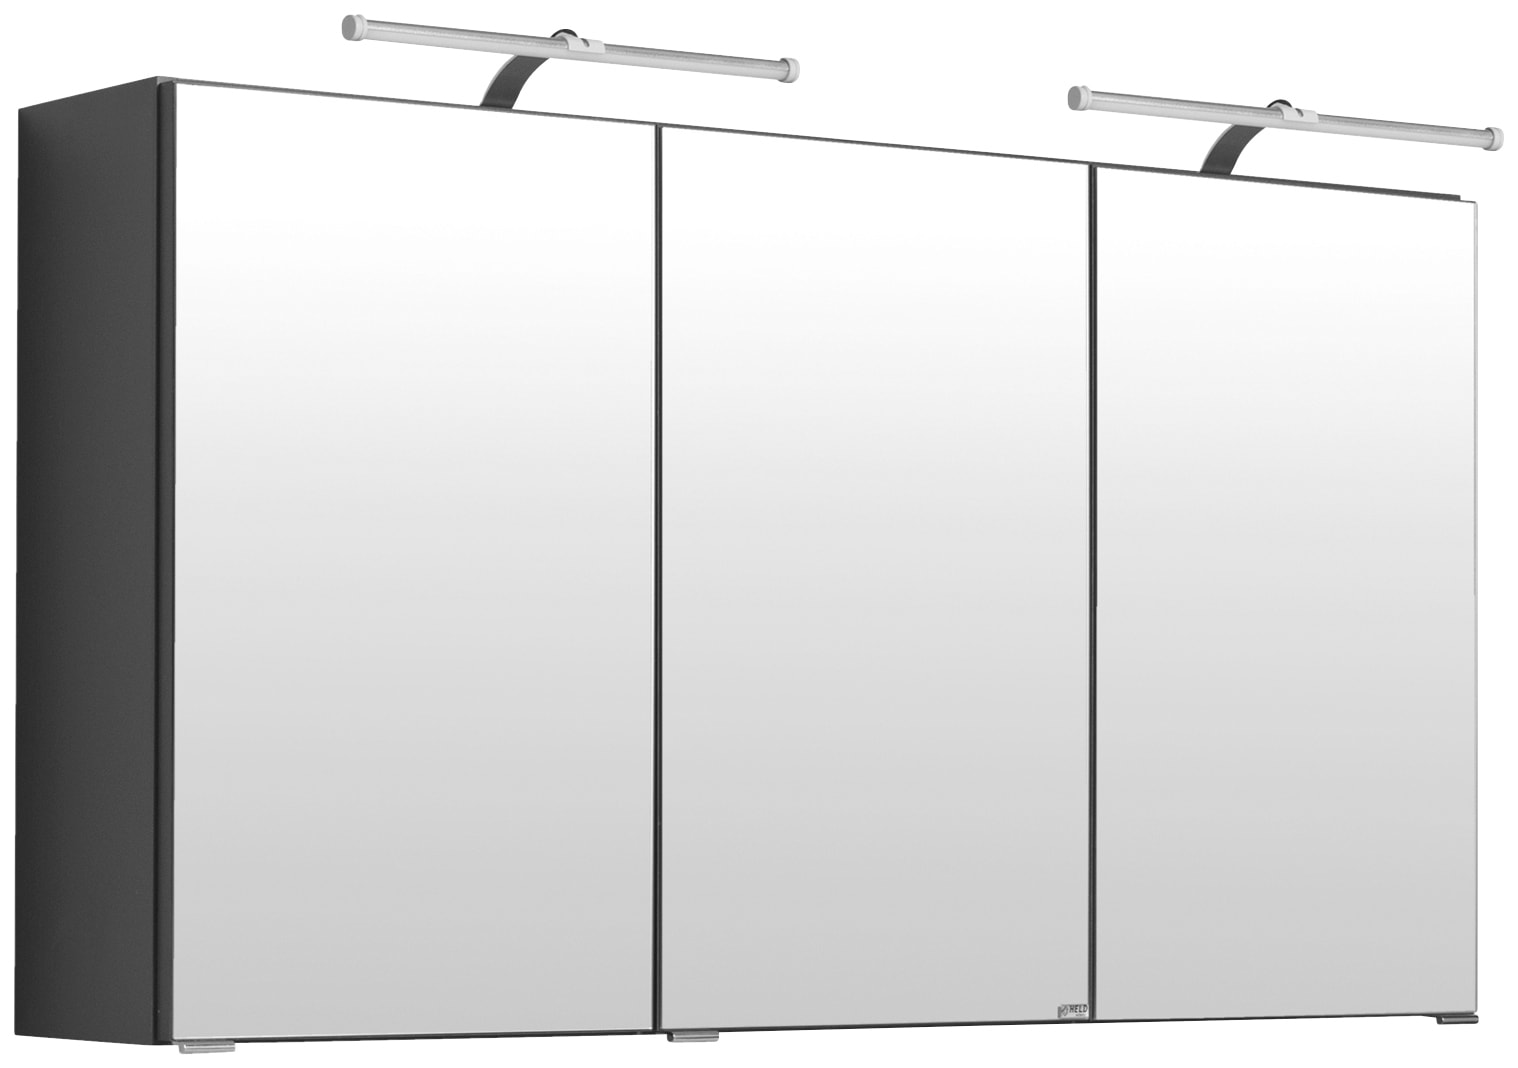 HELD MÖBEL Spiegelschrank "Florida", Breite 120 cm, mit Spiegeltüren und Türendämpfern